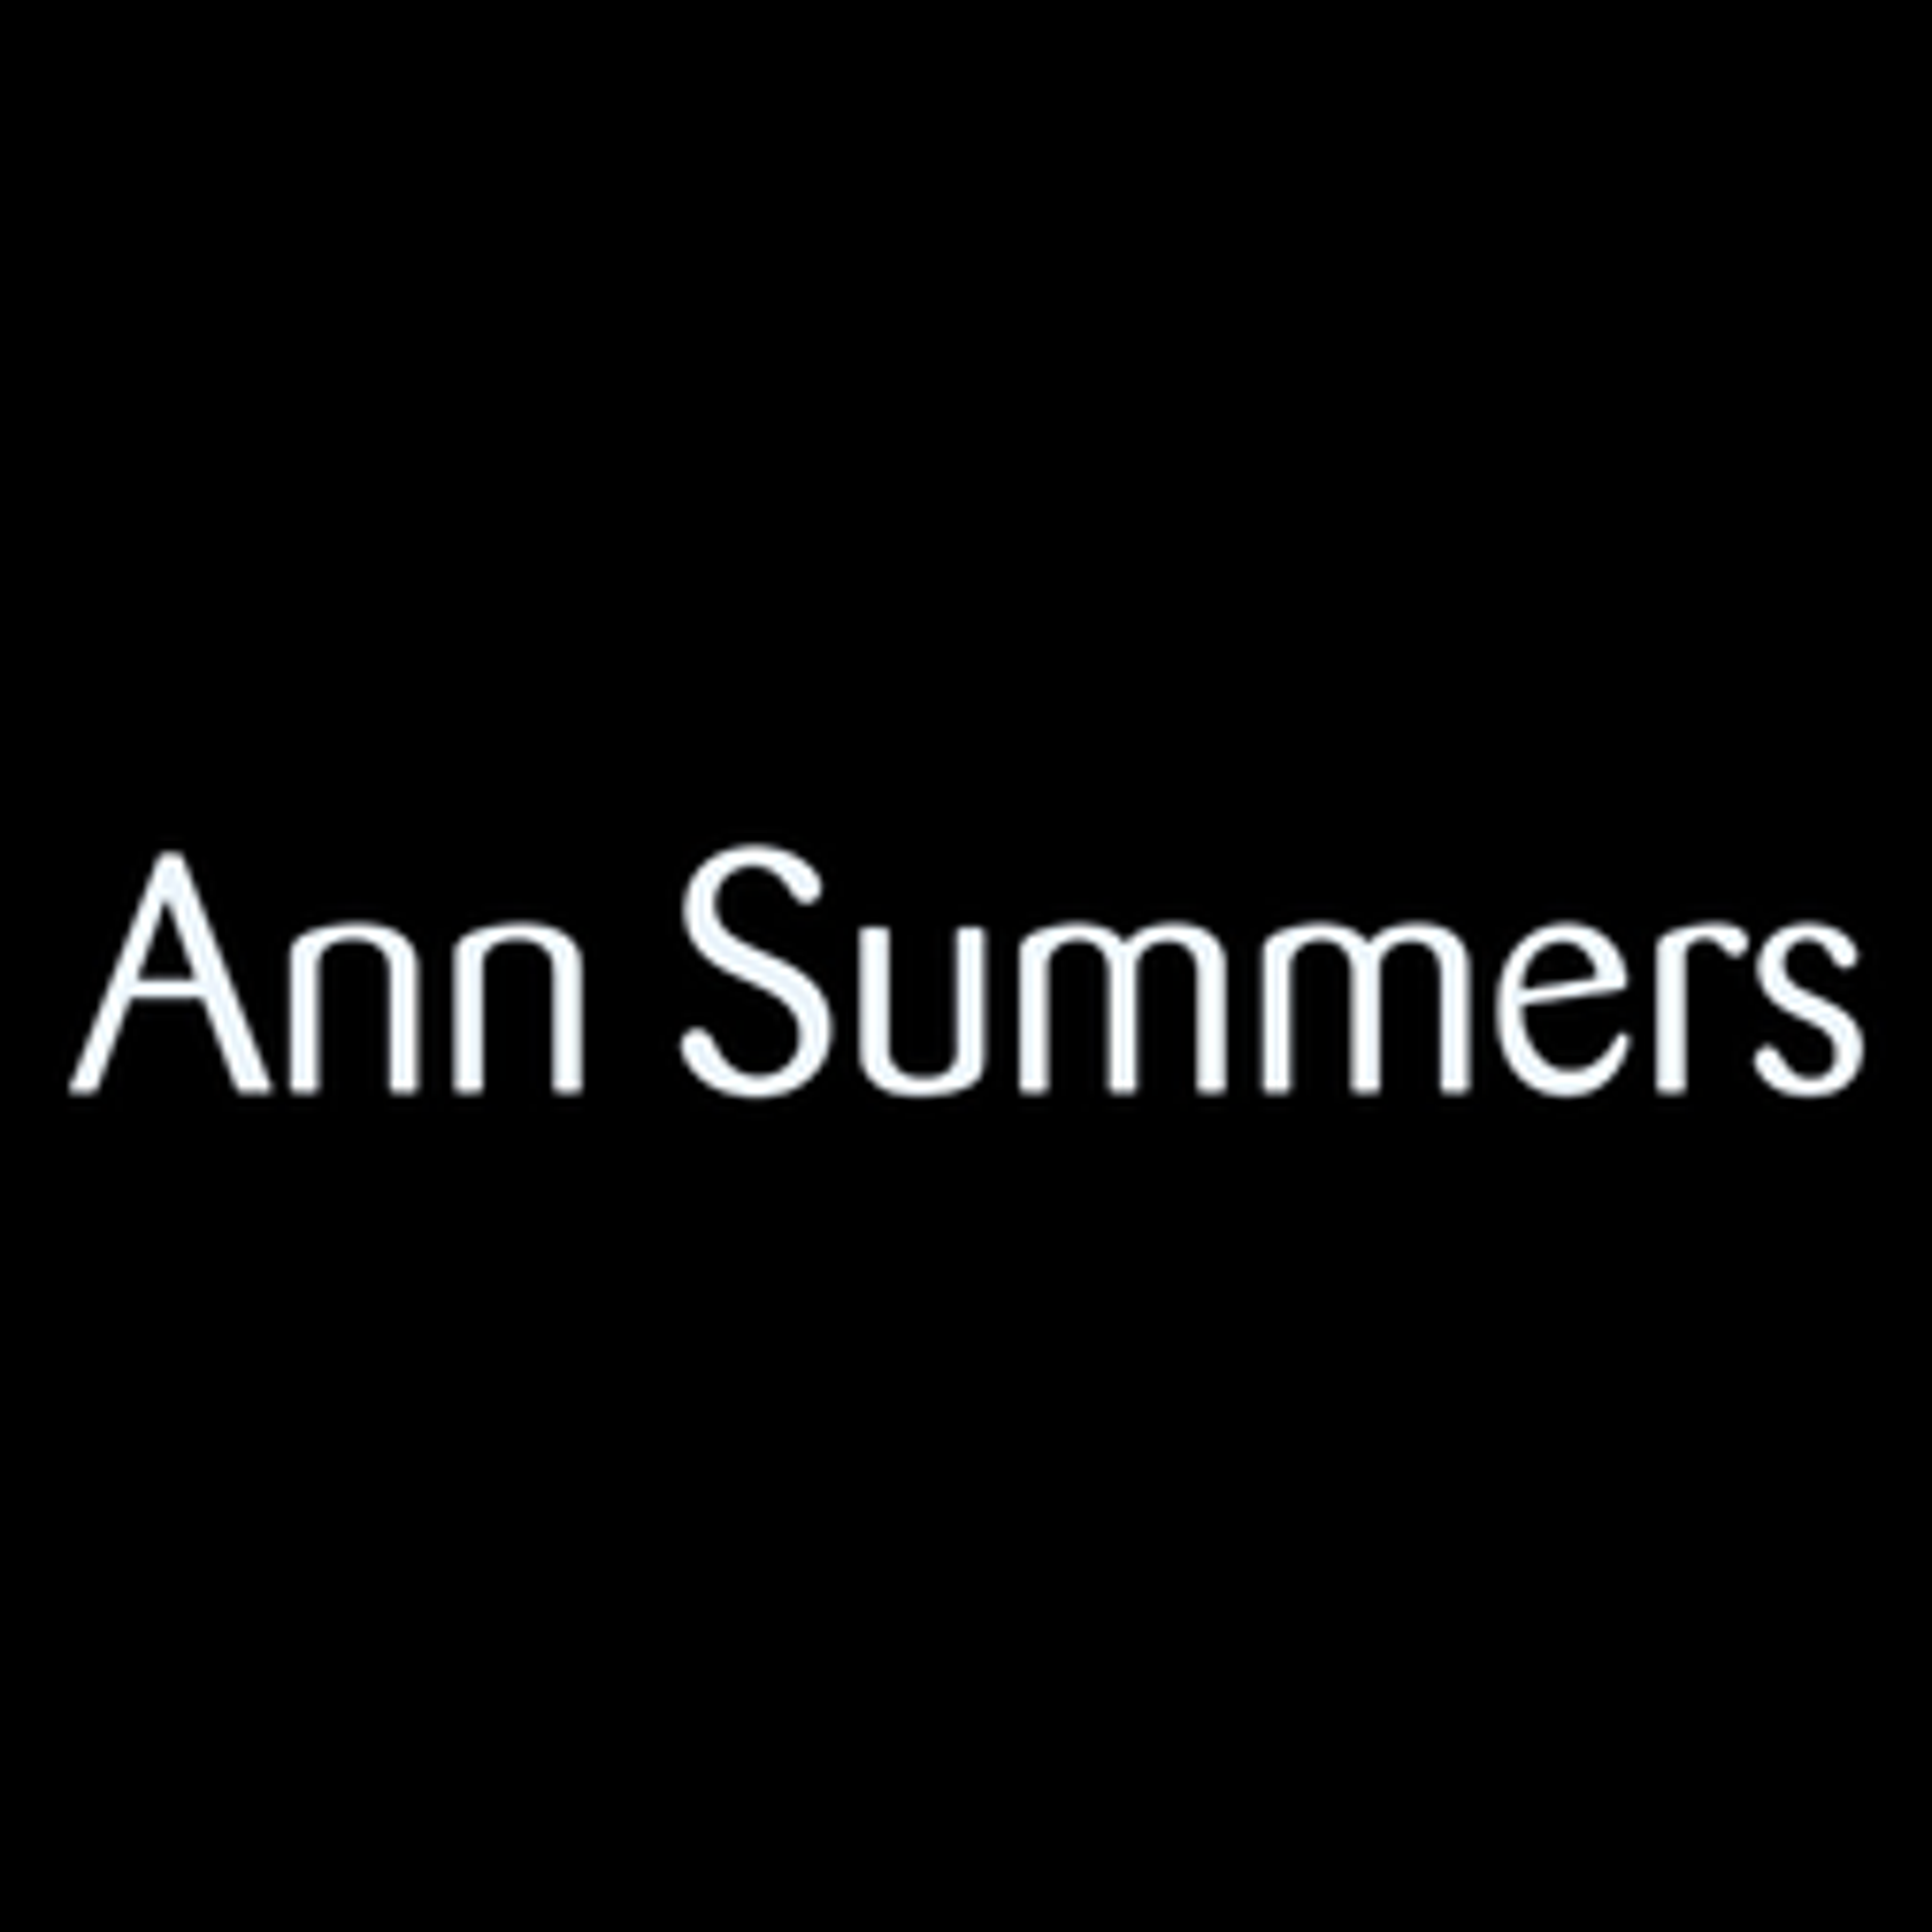  Ann Summers 